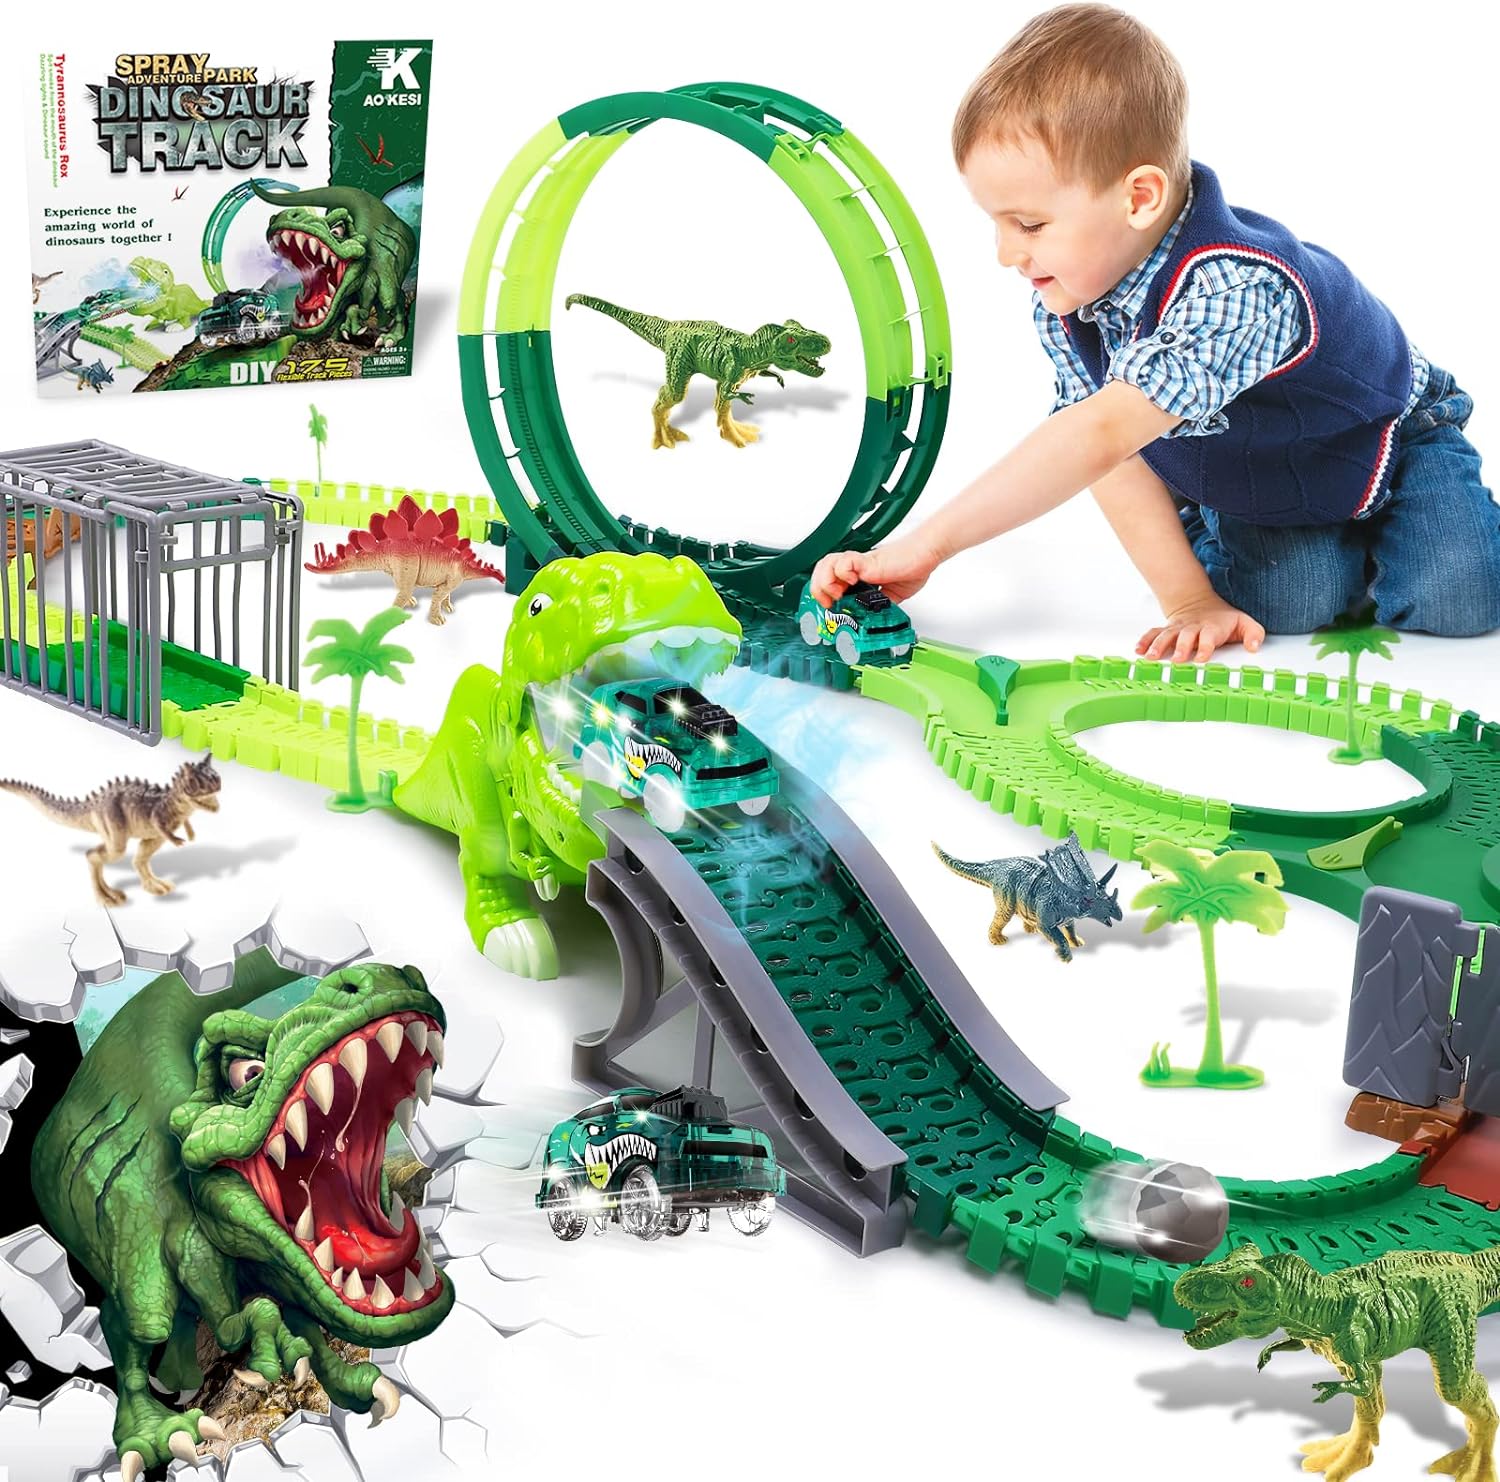 Dinosaur Toys Race Car Track, Spray Dinosaur Racing Car Tracks Toy, Flexible Tracks with 360 Loop, Create a Road Dinosaur Escape World for Christmas & Birthday Gift for Boys Girls Kids